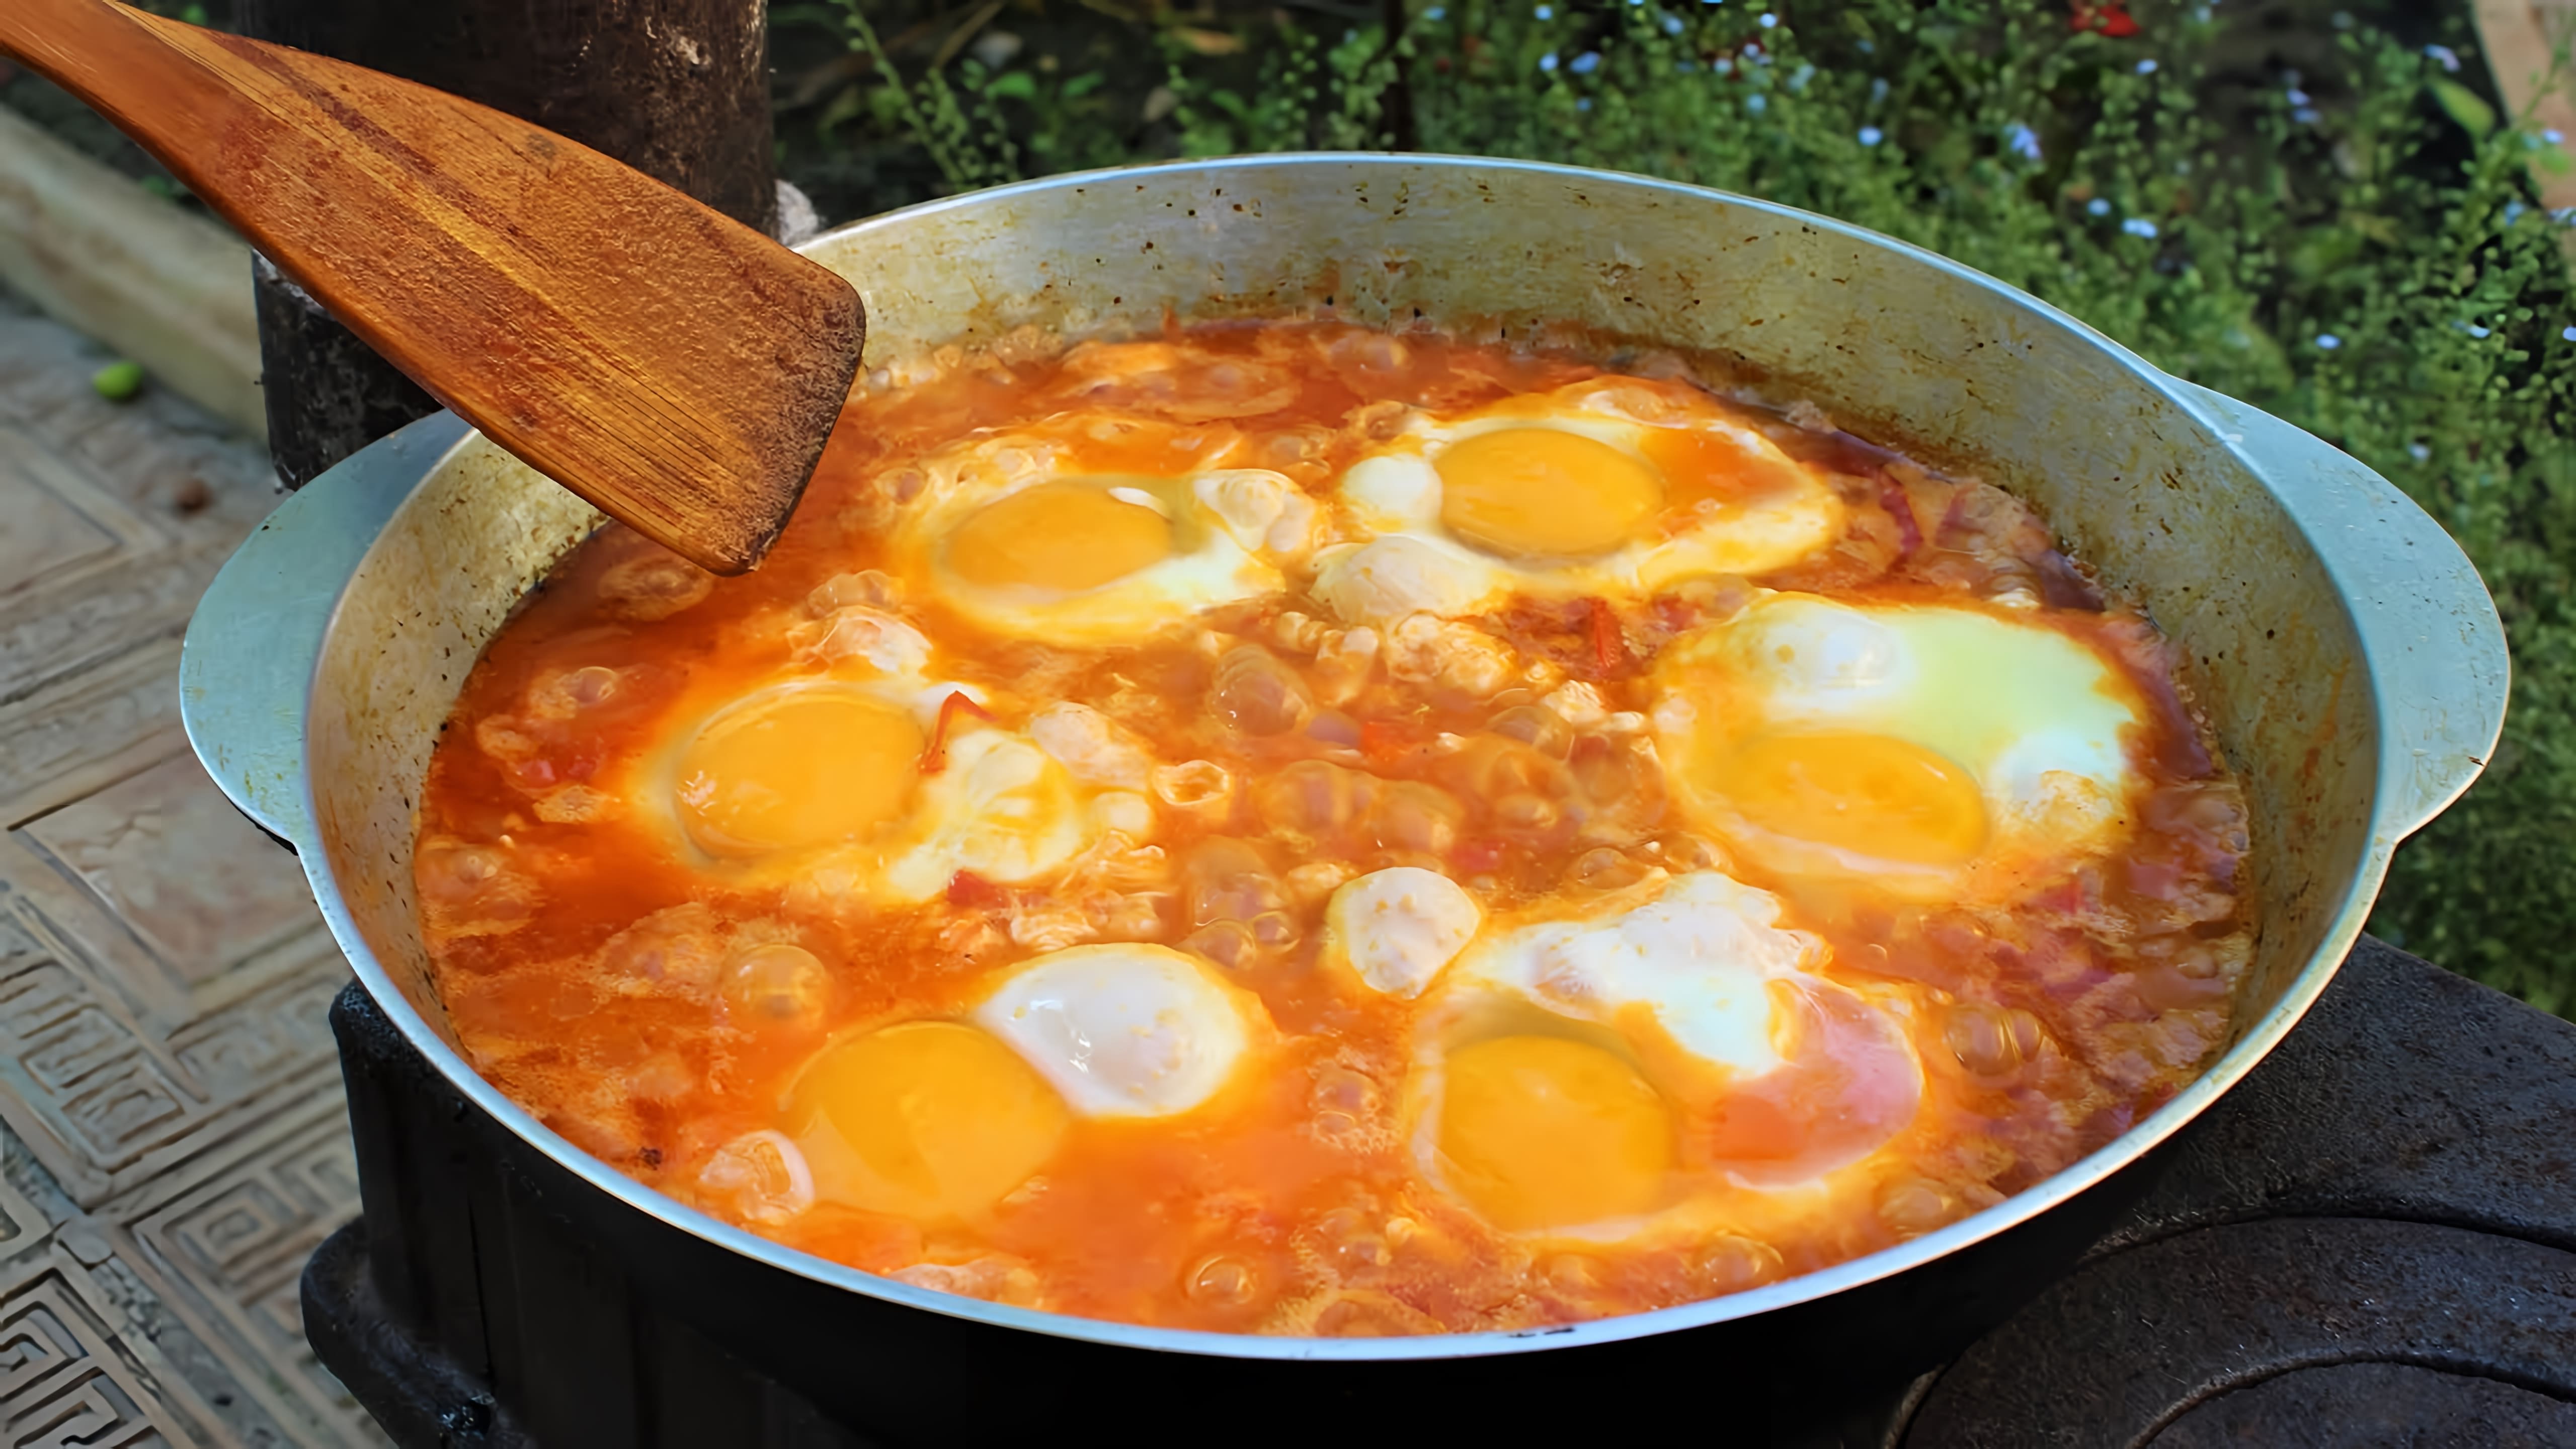 Шакшука - лучшая яичница в мире! Еврейская кухня (Израильская кухня). Блюдо из овощей, яиц и специй - которое... 